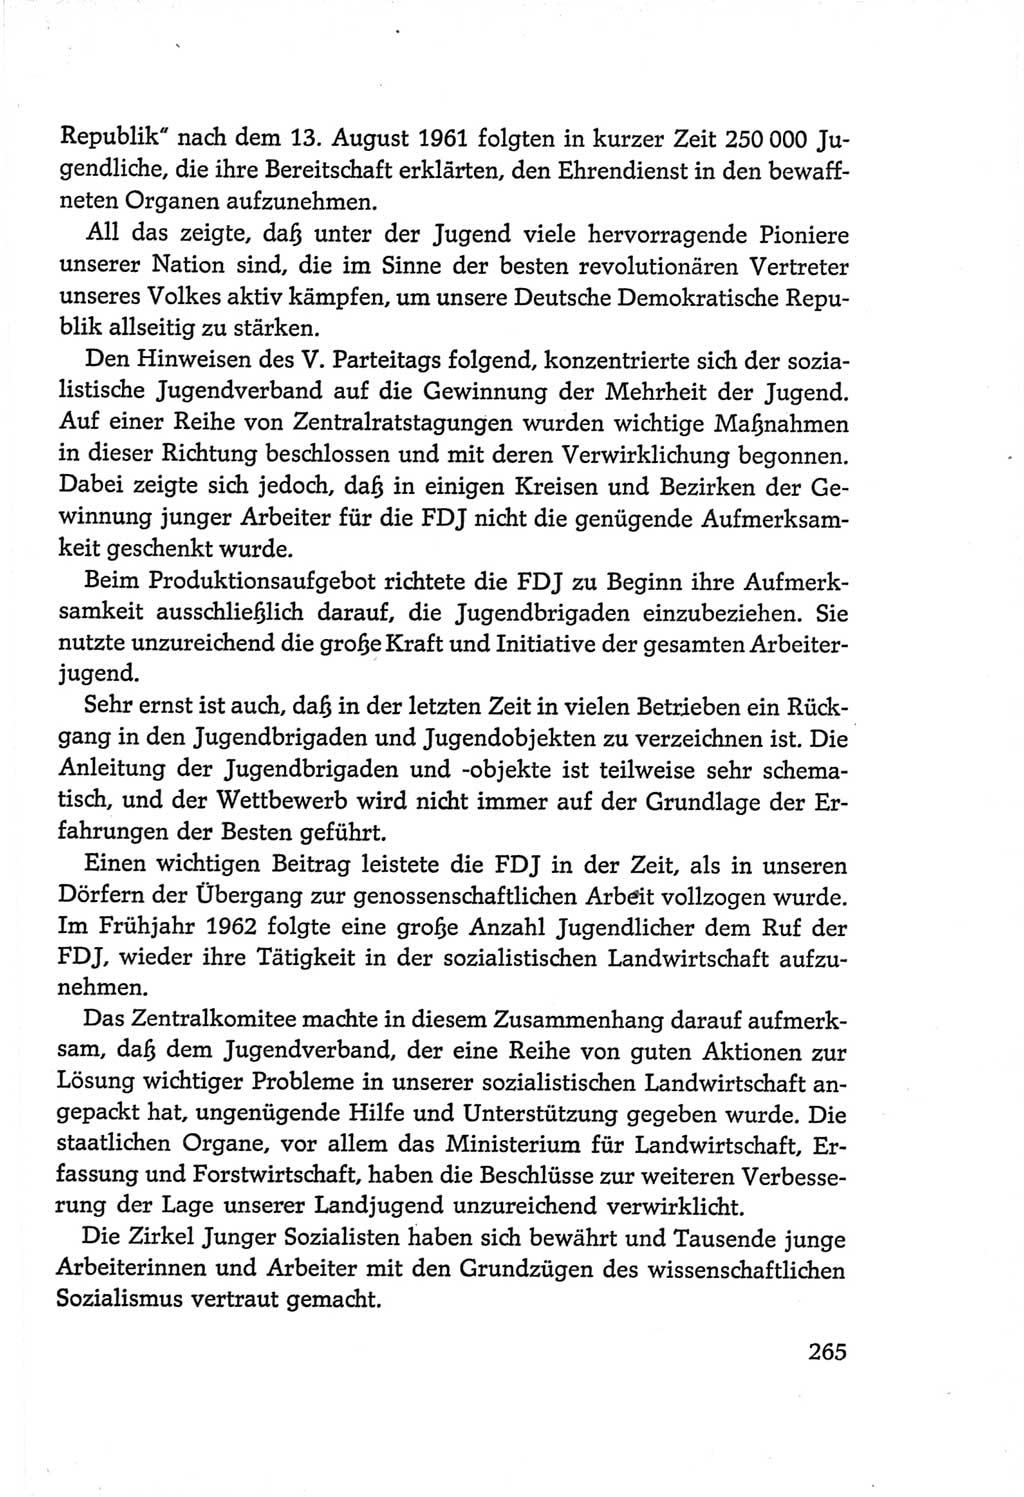 Protokoll der Verhandlungen des Ⅵ. Parteitages der Sozialistischen Einheitspartei Deutschlands (SED) [Deutsche Demokratische Republik (DDR)] 1963, Band Ⅳ, Seite 265 (Prot. Verh. Ⅵ. PT SED DDR 1963, Bd. Ⅳ, S. 265)